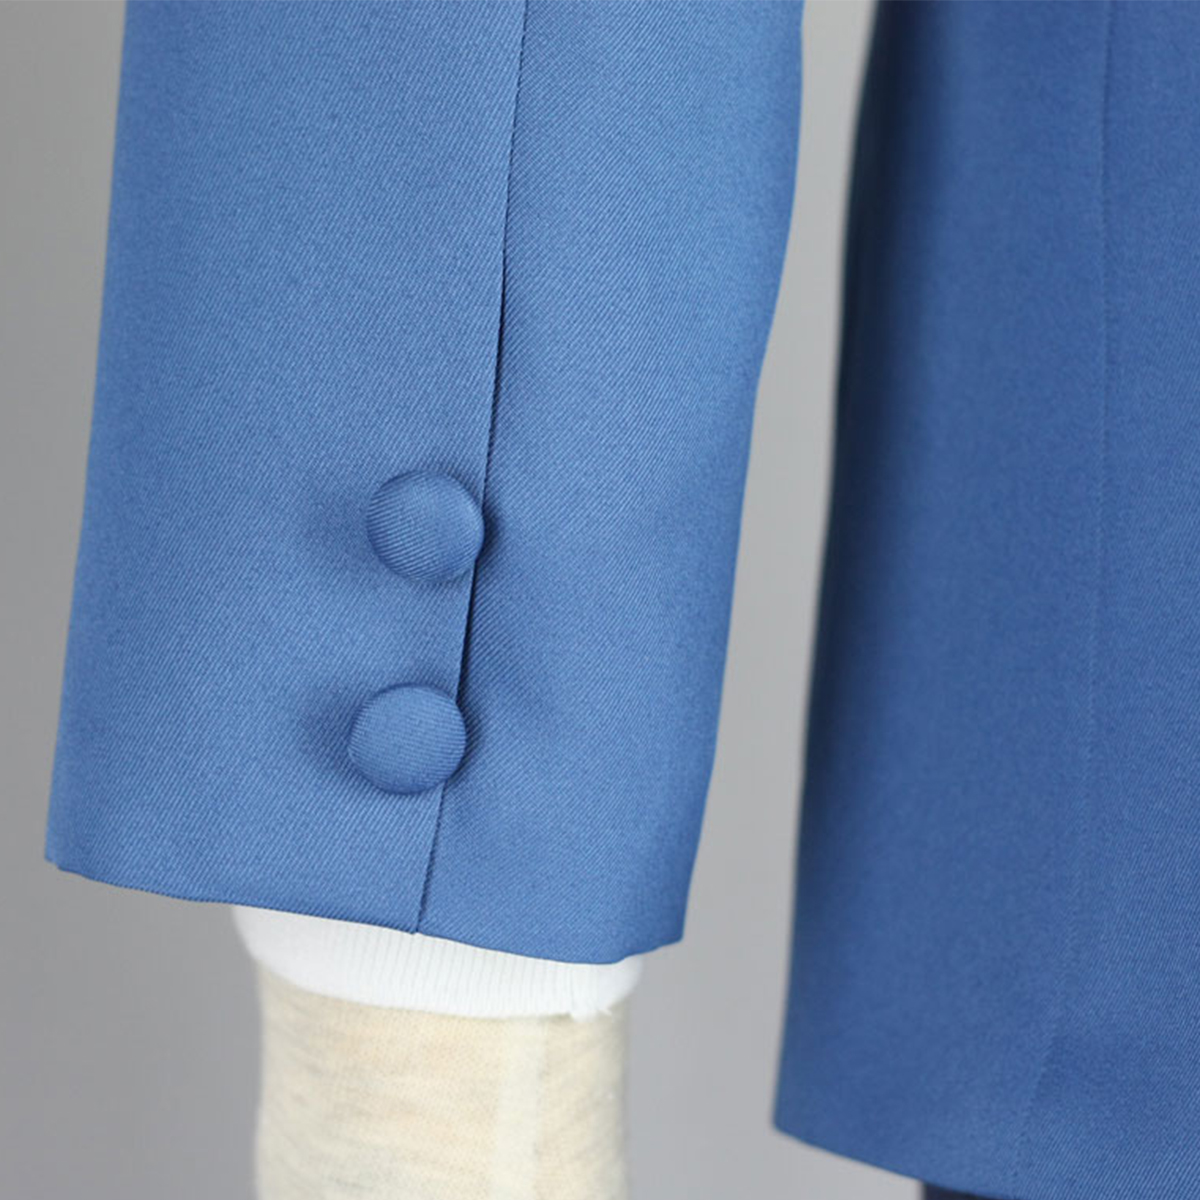 Axis Powers Hetalia Winter Male School Uniform 1 Cosplay Costumes New Zealand Online Store